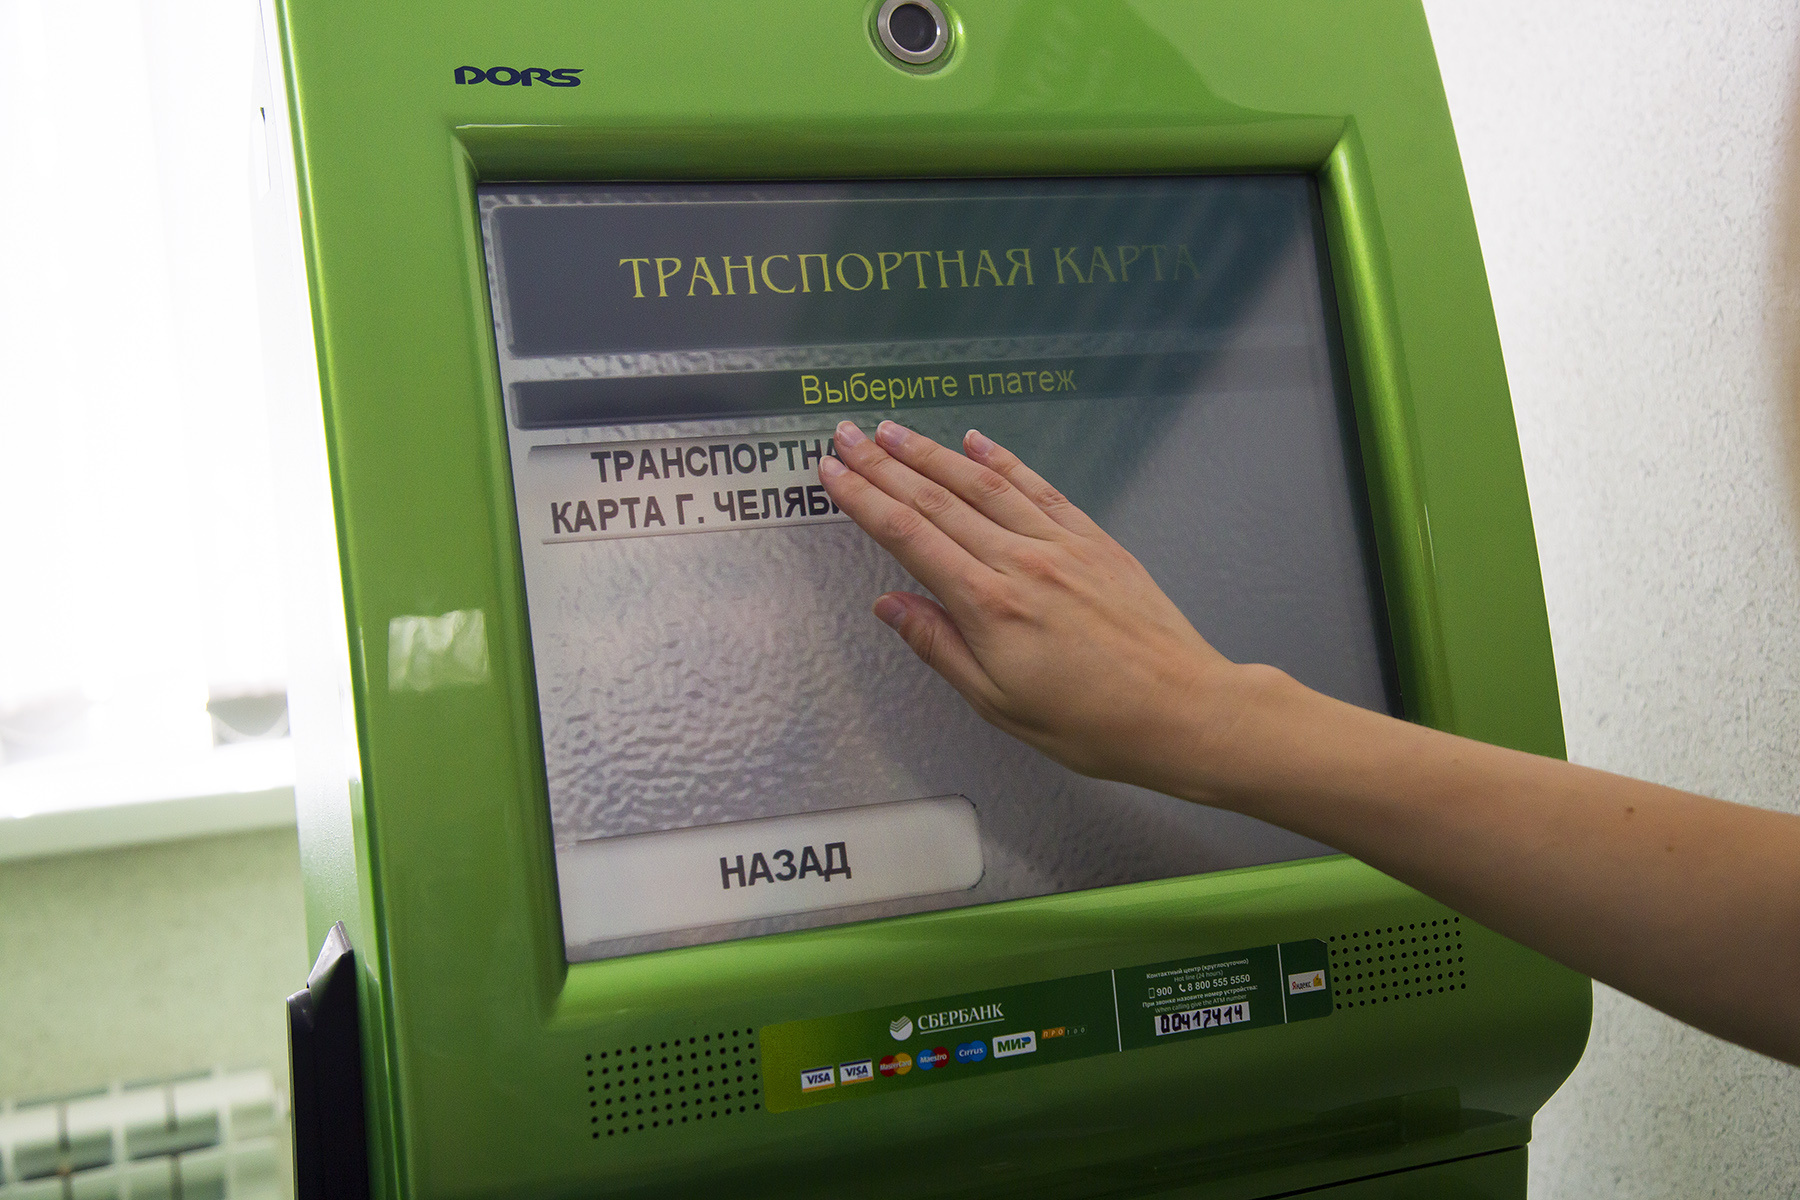 Годовое обслуживание личной (не зарплатной) карты обойдётся на 150 рублей дороже обычной